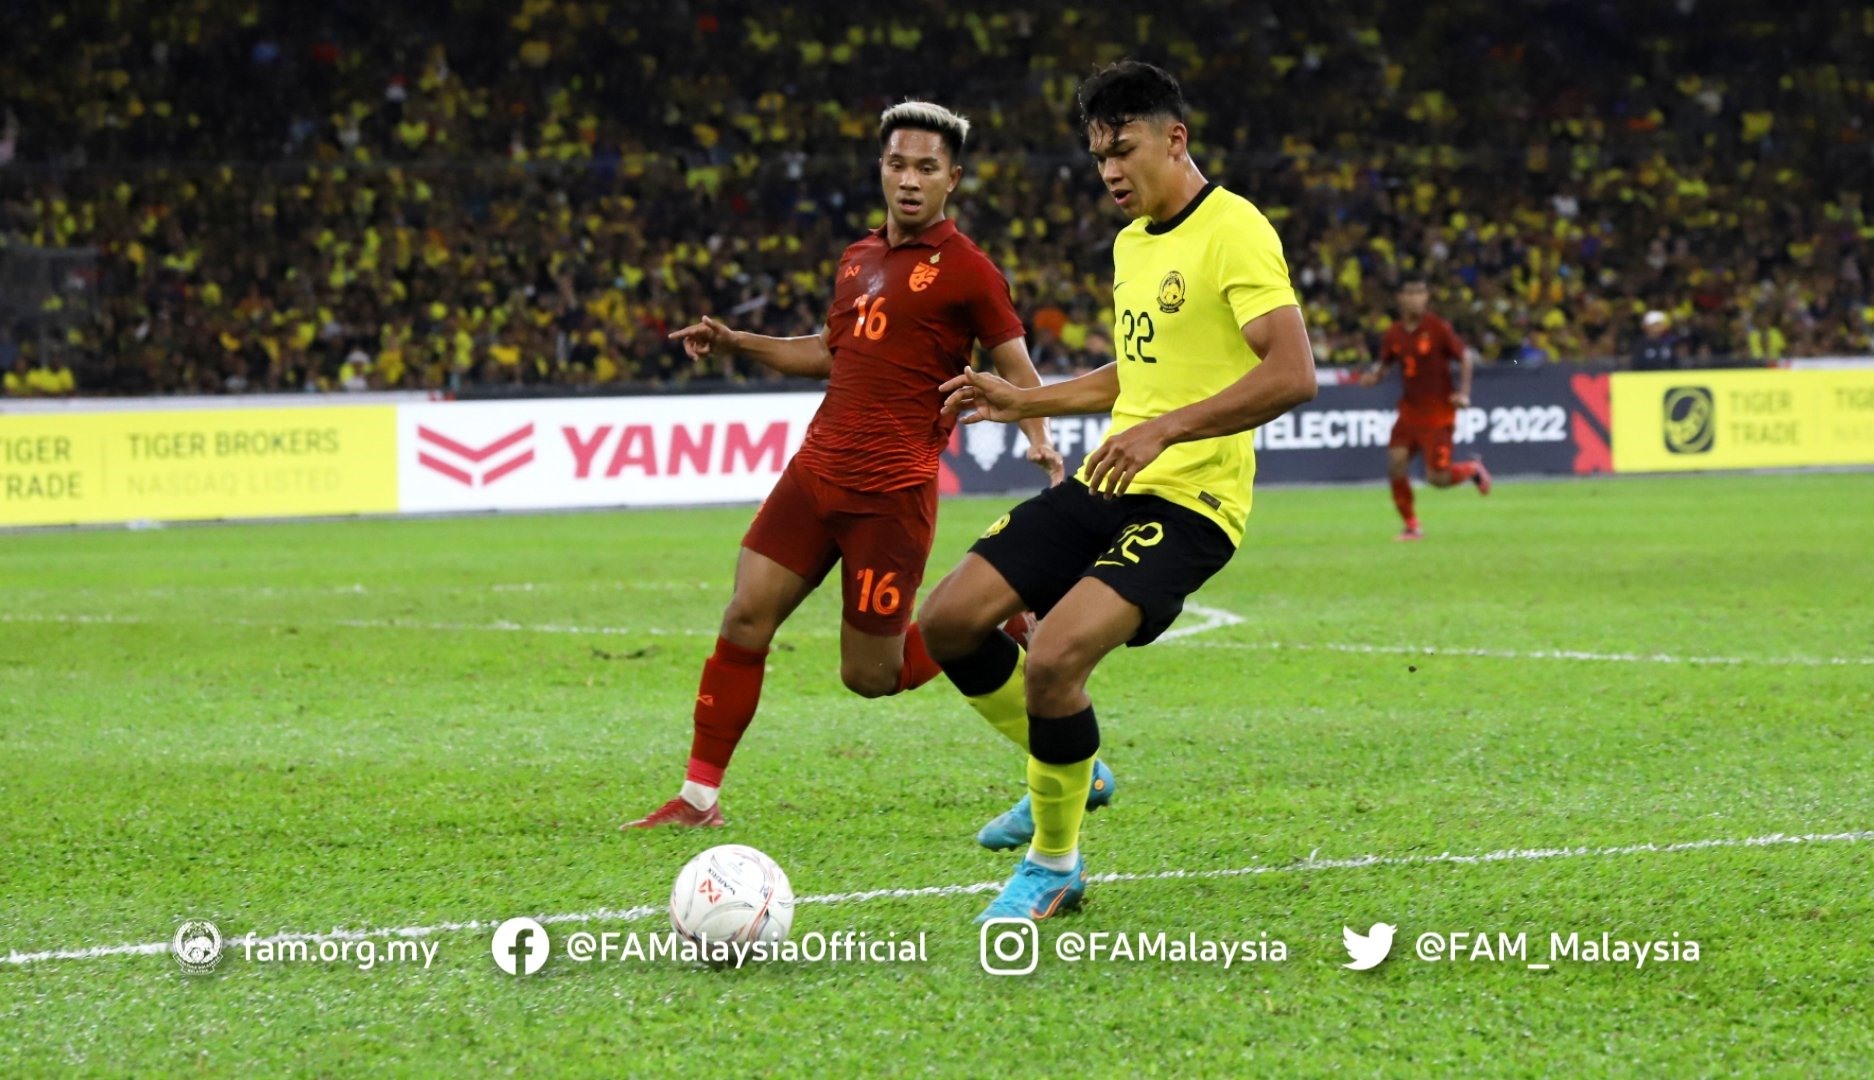 Tuyển Malaysia có lợi thế trước trận bán kết lượt về ở Thái Lan khi dẫn đối thủ 1-0. Ảnh: FAM